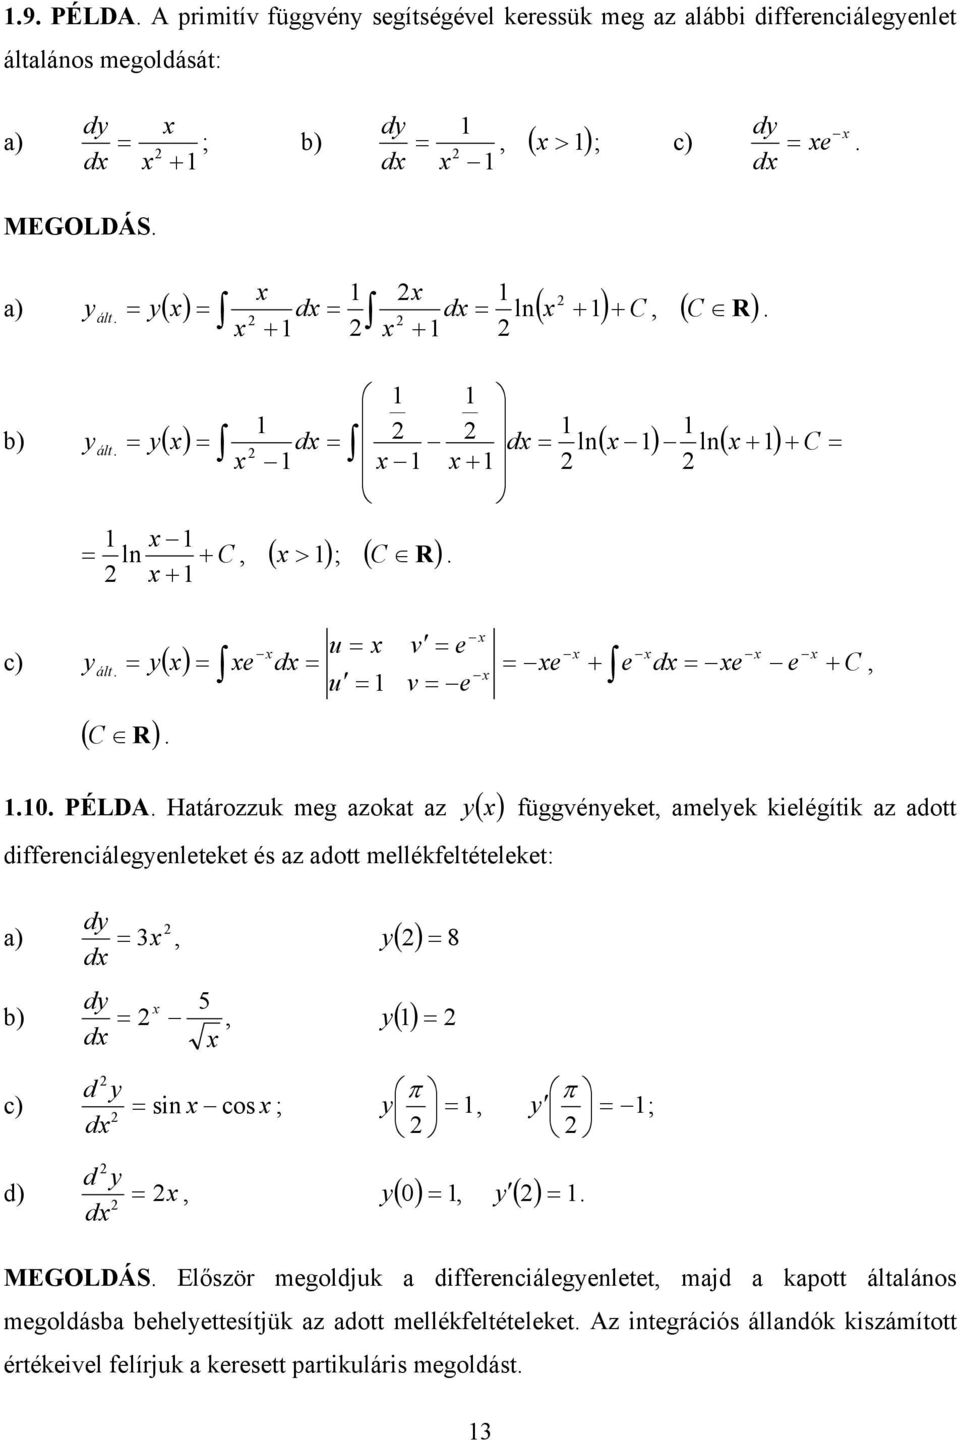 differenciálegenleteket és az adott mellékfeltételeket: d 8 a) d d 5 b) d d c) sin cos ; d ; d d) d 0 MEGOLDÁS Először megoldjuk a differenciálegenletet